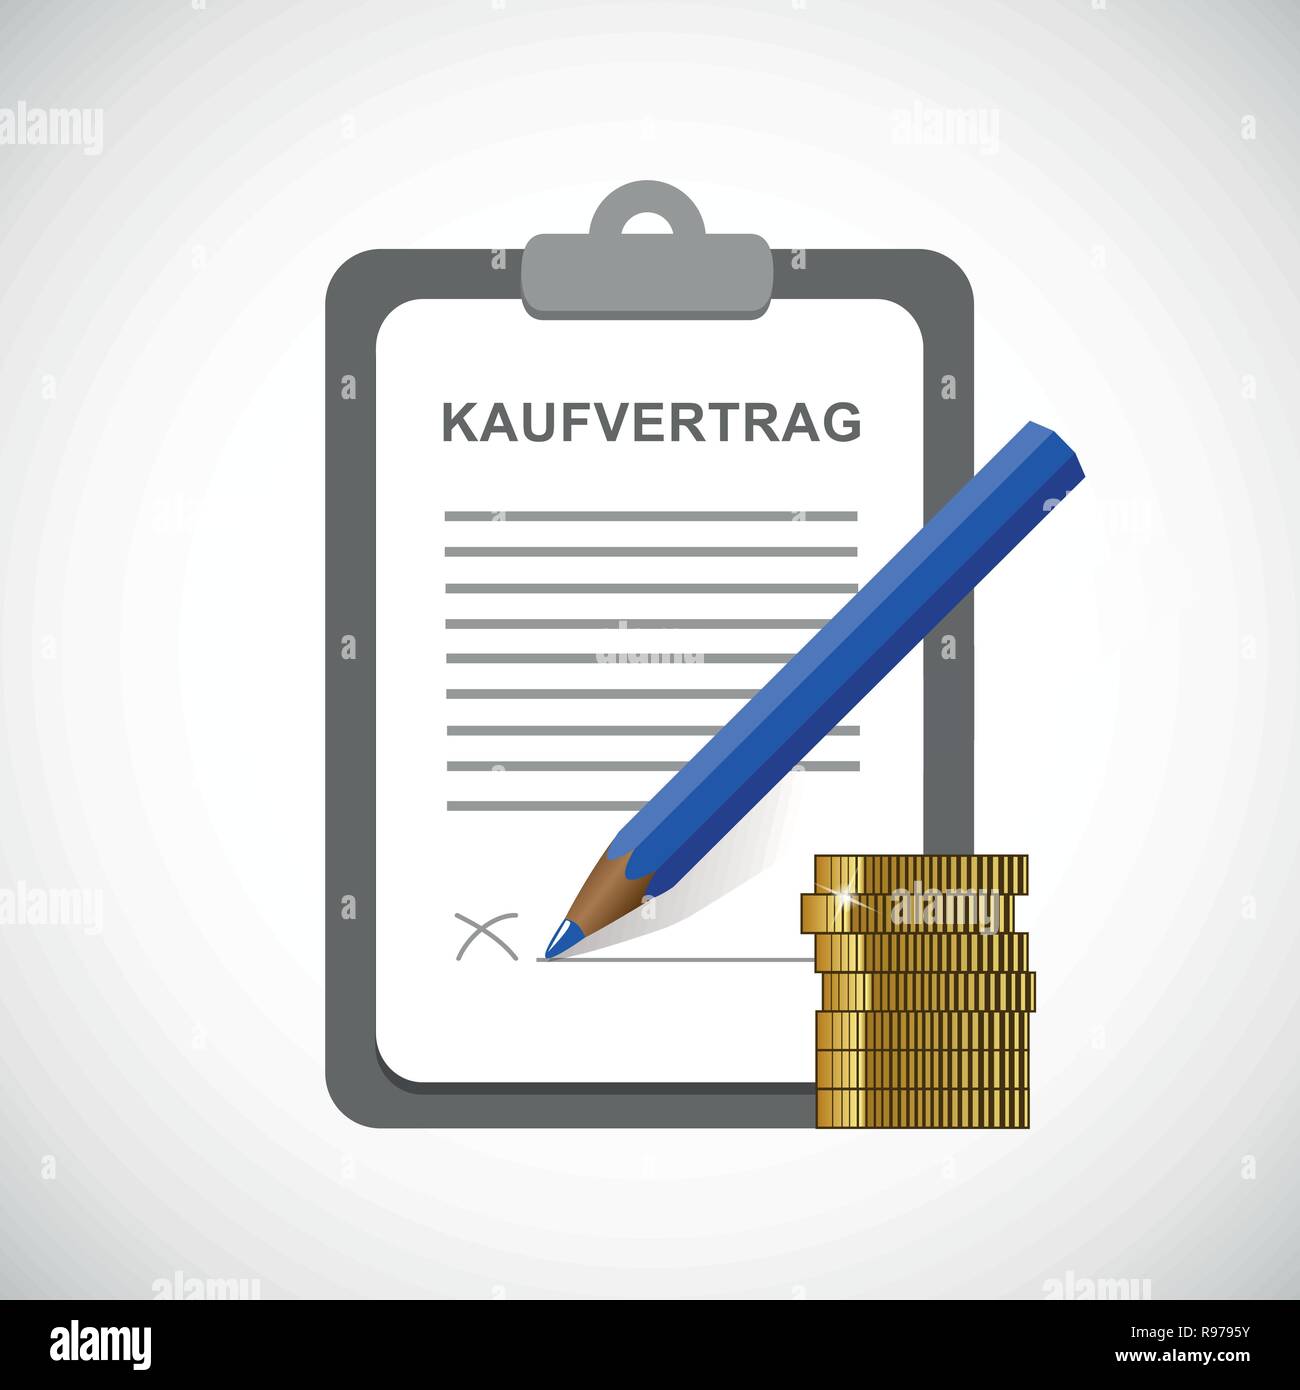 Kaufvertrag Zwischenablage und Blau Bleistift und goldenen Münzen Vektor-illustration EPS 10. Stock Vektor